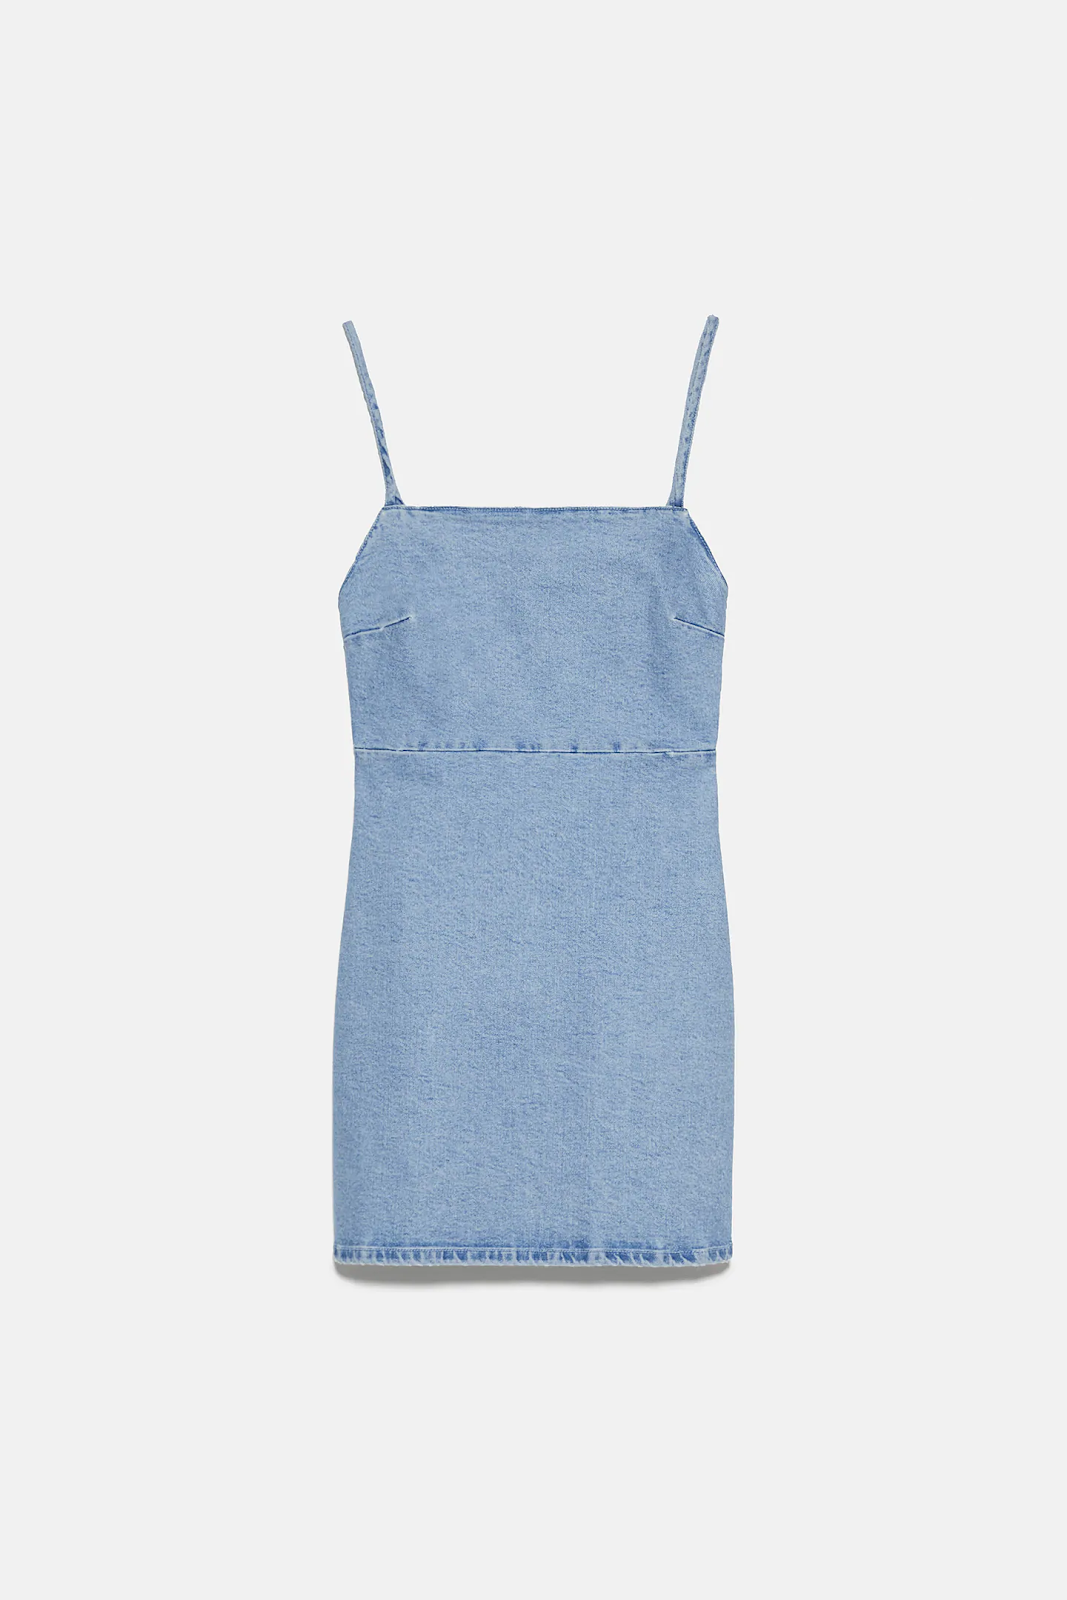 Vestido barato online, de tela estilo denim en color azul y con tirante fino, de la tienda Zara. uno de los 15 mejores vestidos baratos para este verano